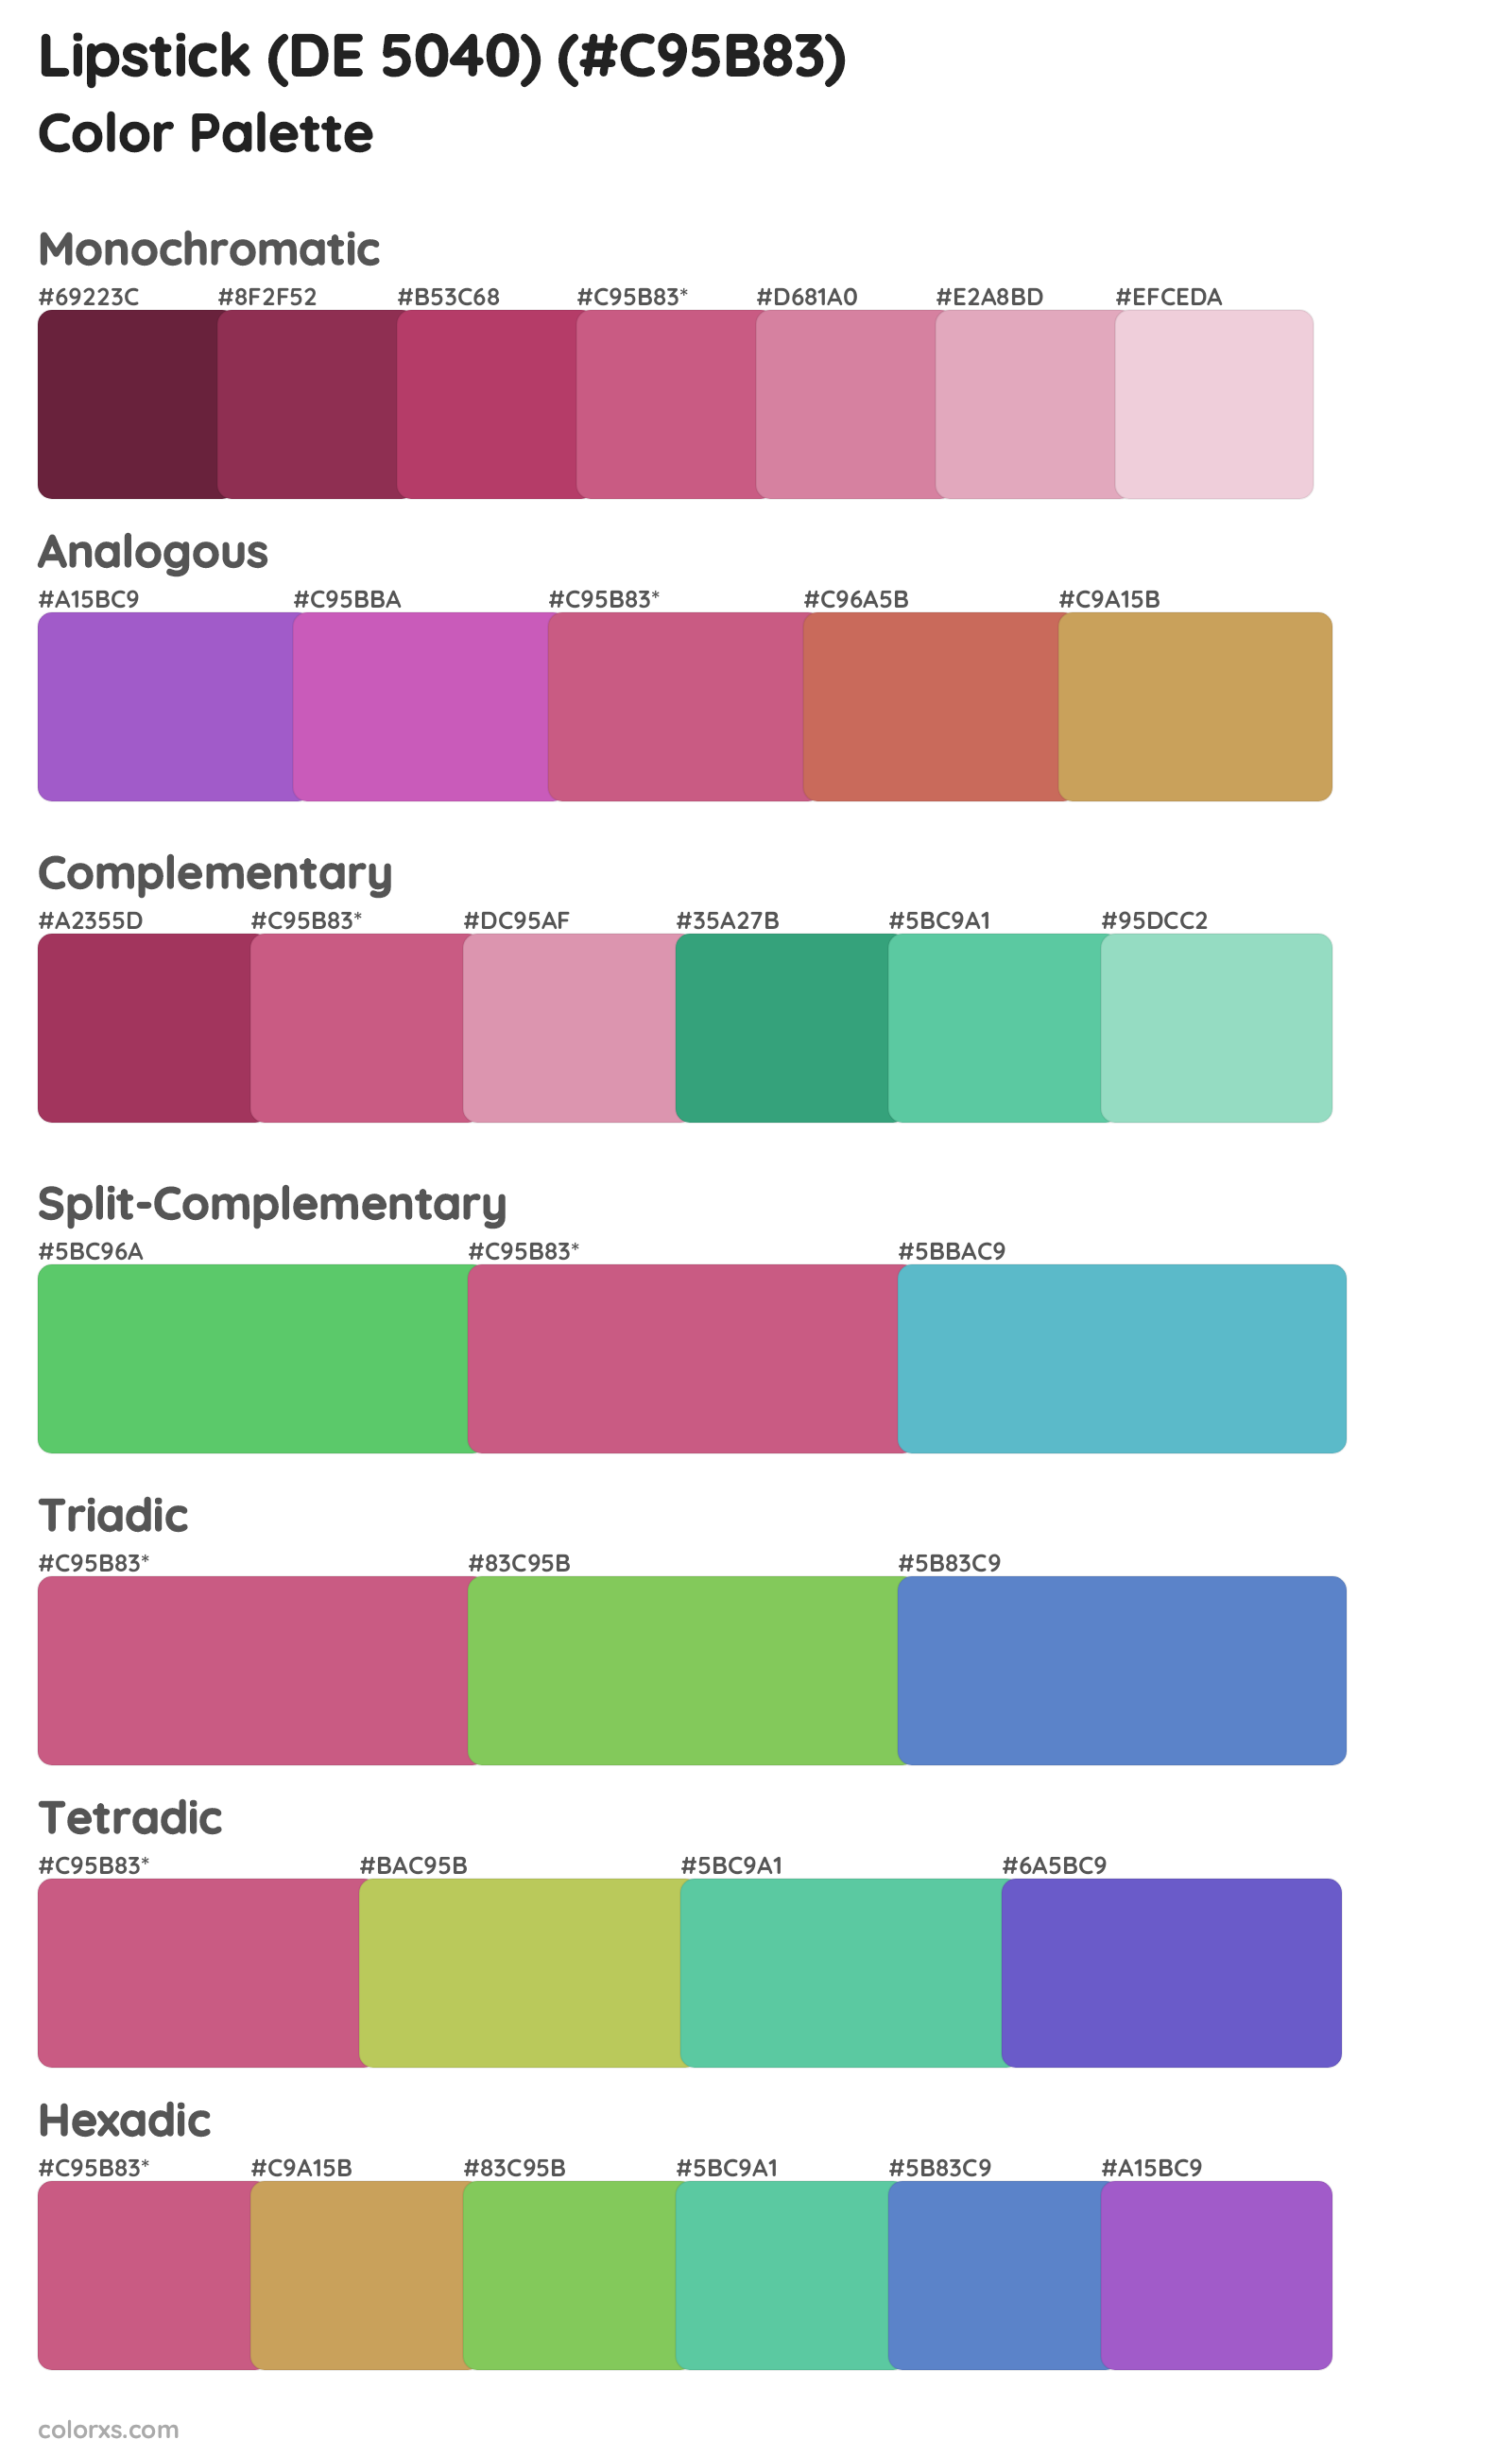 Lipstick (DE 5040) Color Scheme Palettes